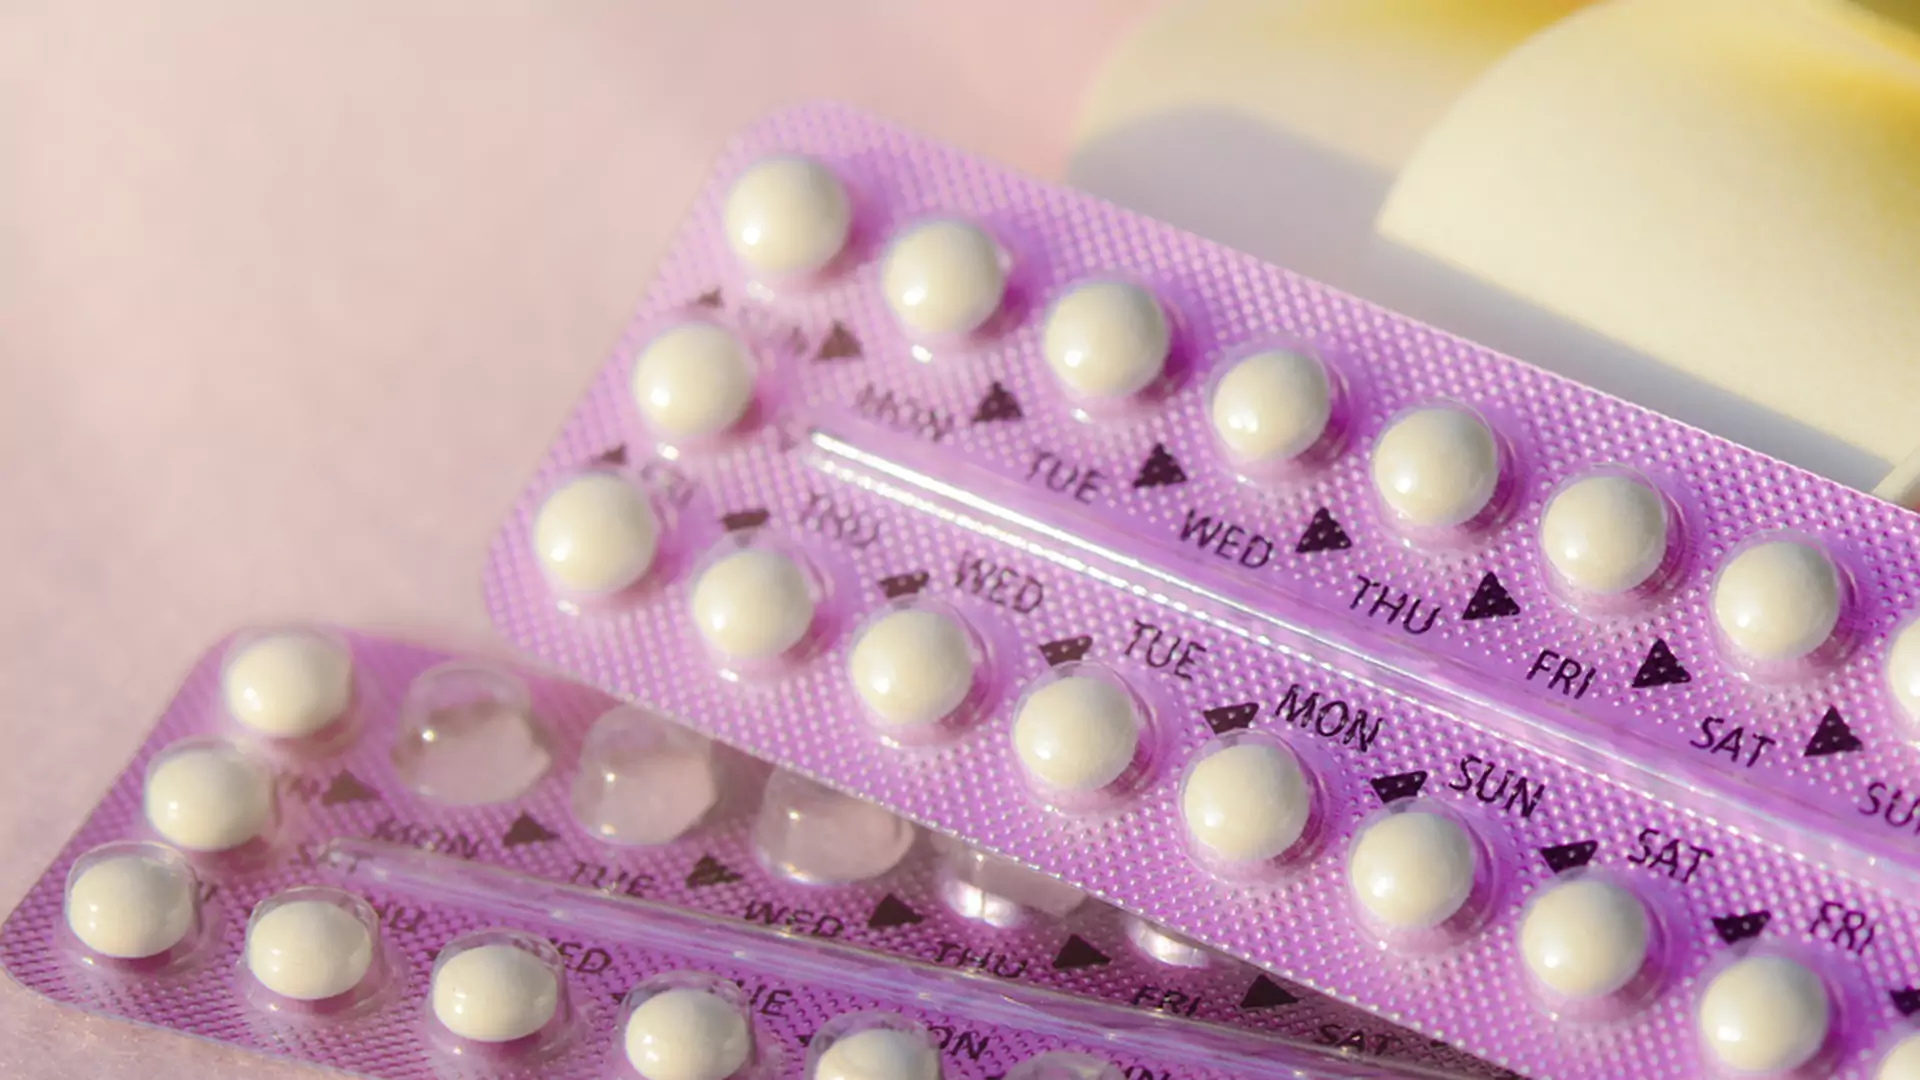 11 zastosowań tabletki antykoncepcyjnej innych niż antykoncepcja. O tym nie wiedziałaś